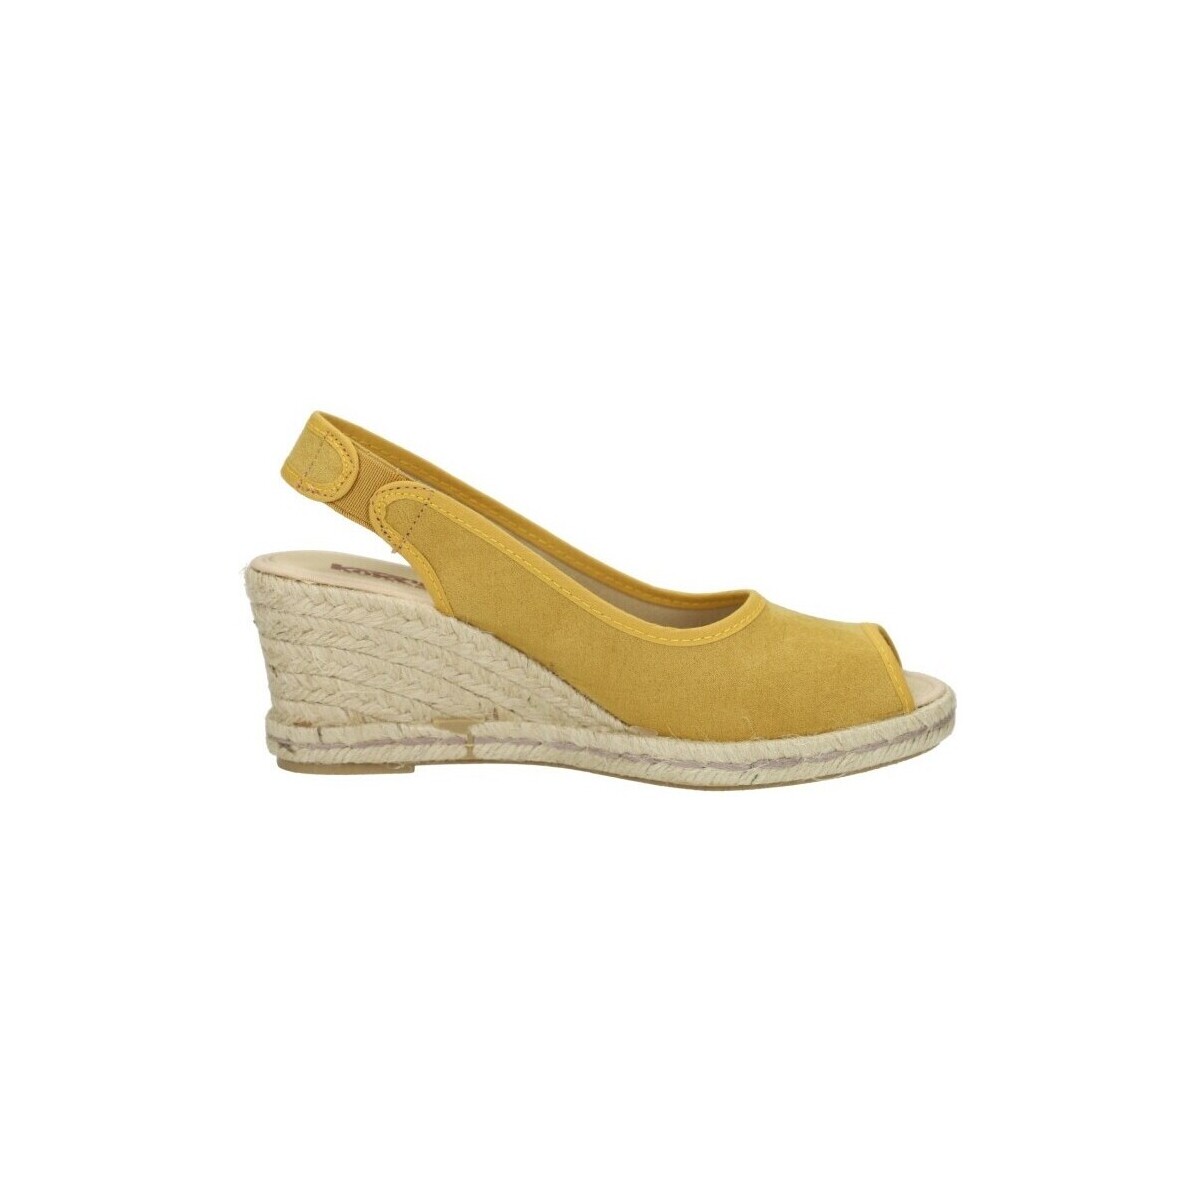 Sapatos Mulher Sapatos de caminhada Kokis  Amarelo